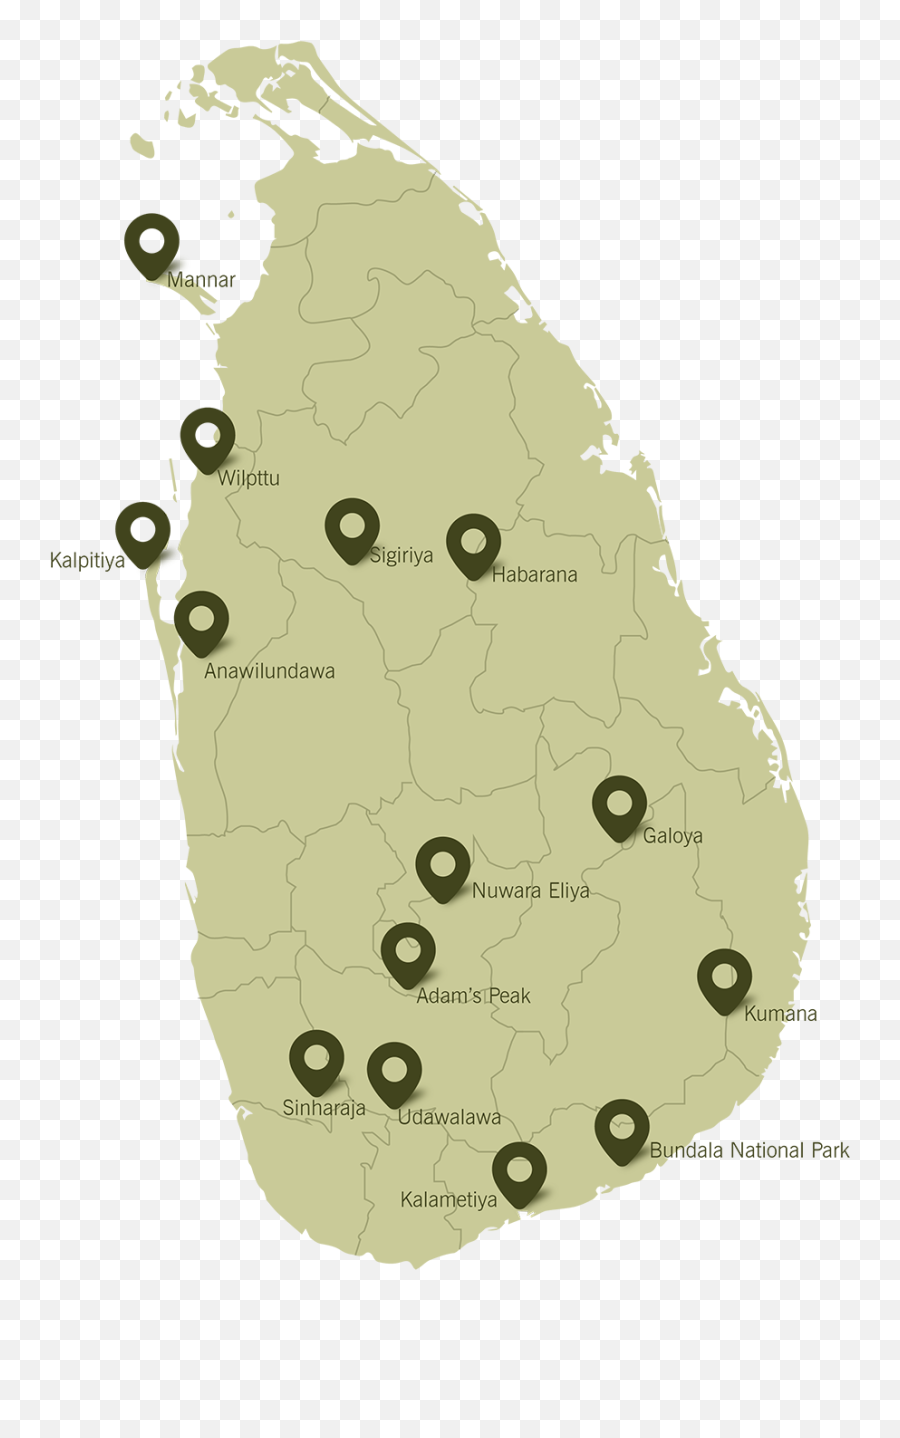 Bird Watching Tours In Sri Lanka - Vote Map Sri Lanka 2019 Png,Tree Plan View Png